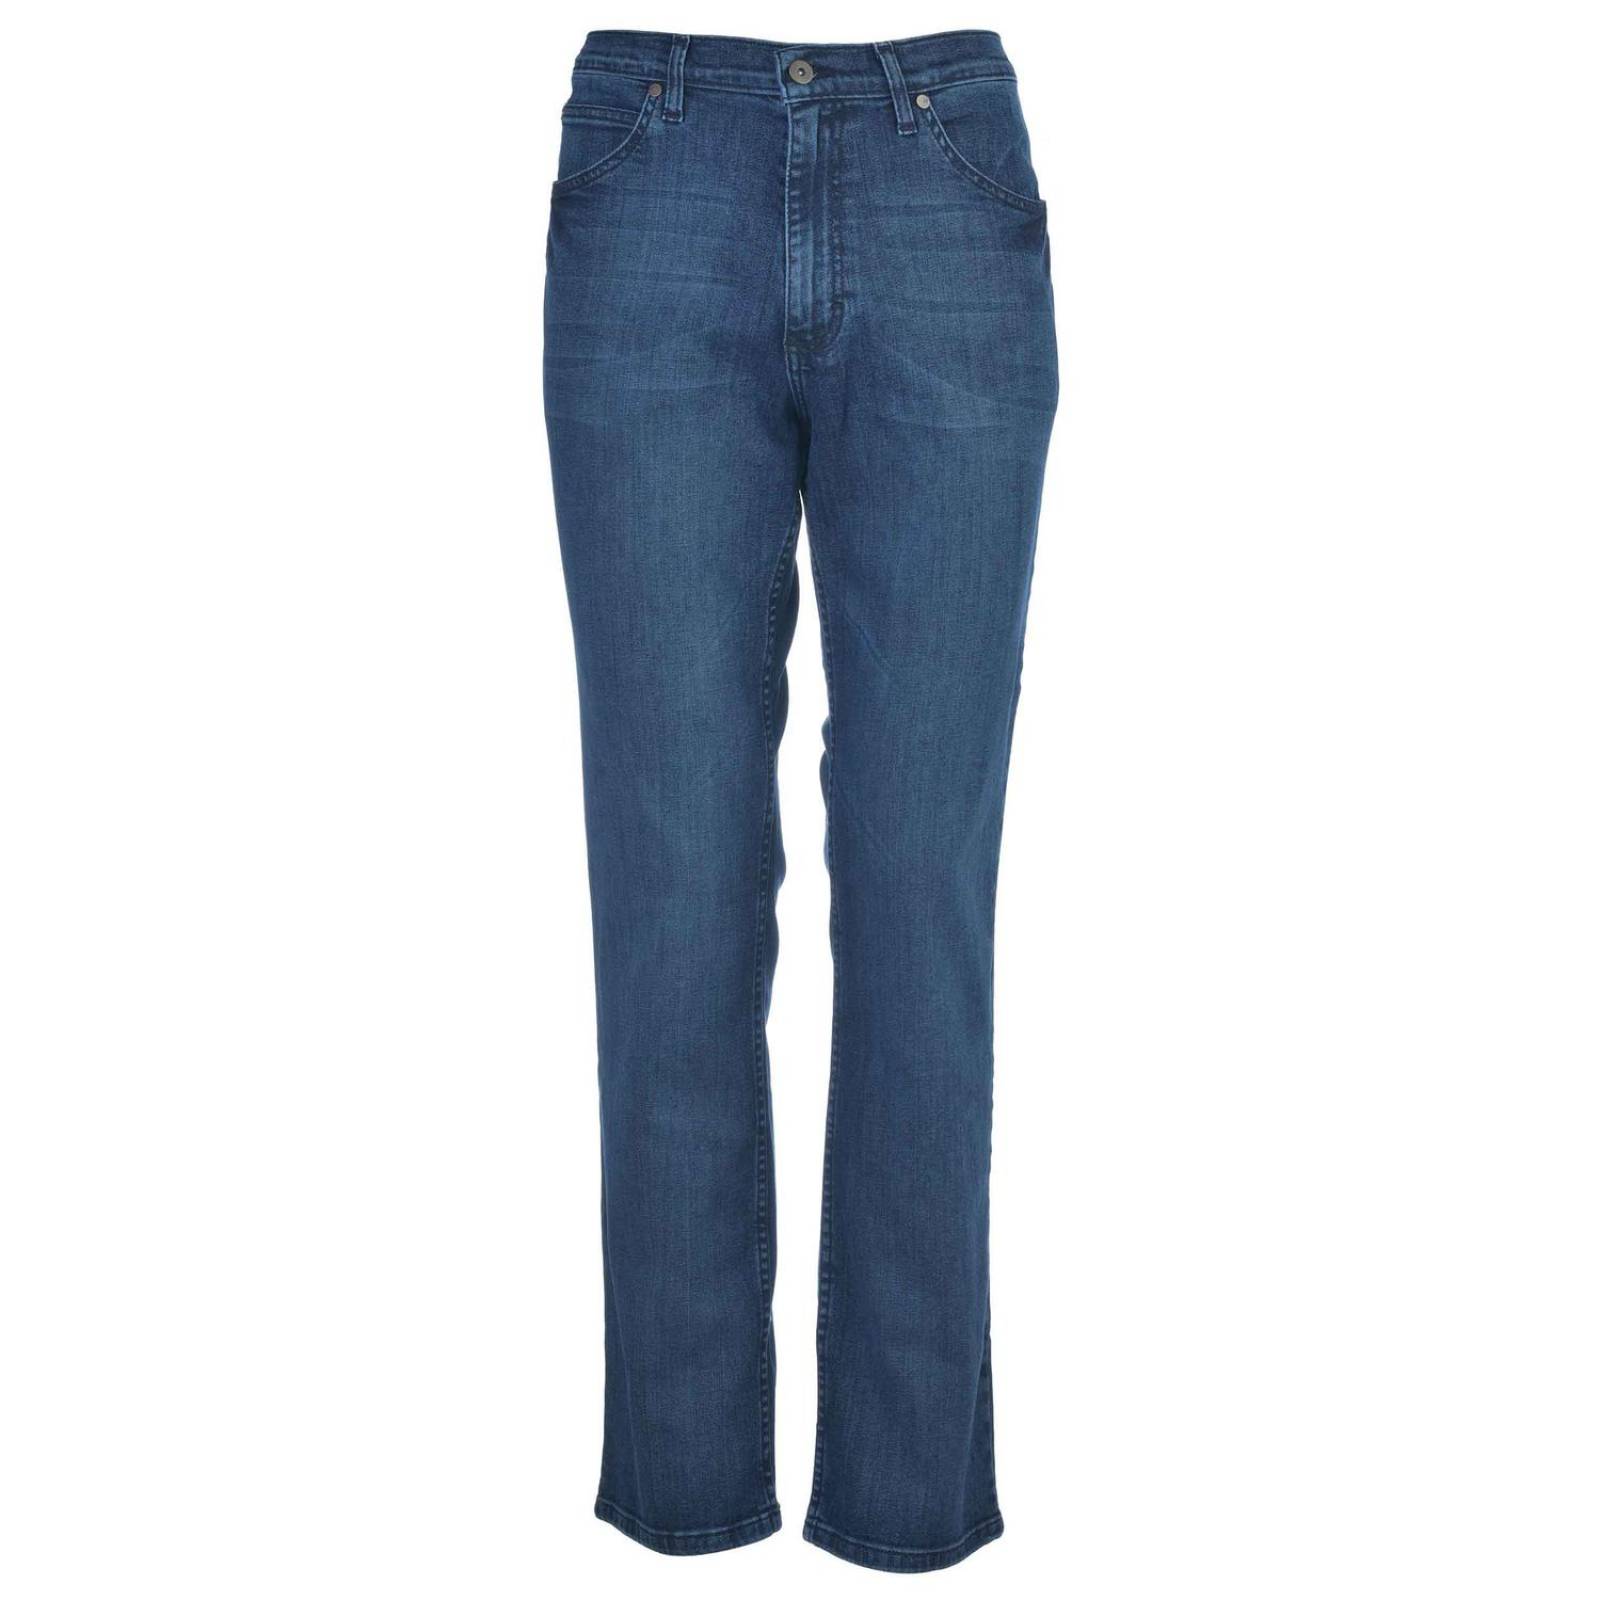 Pantalon Jeans Slim Fit Lee Hombre 09m6